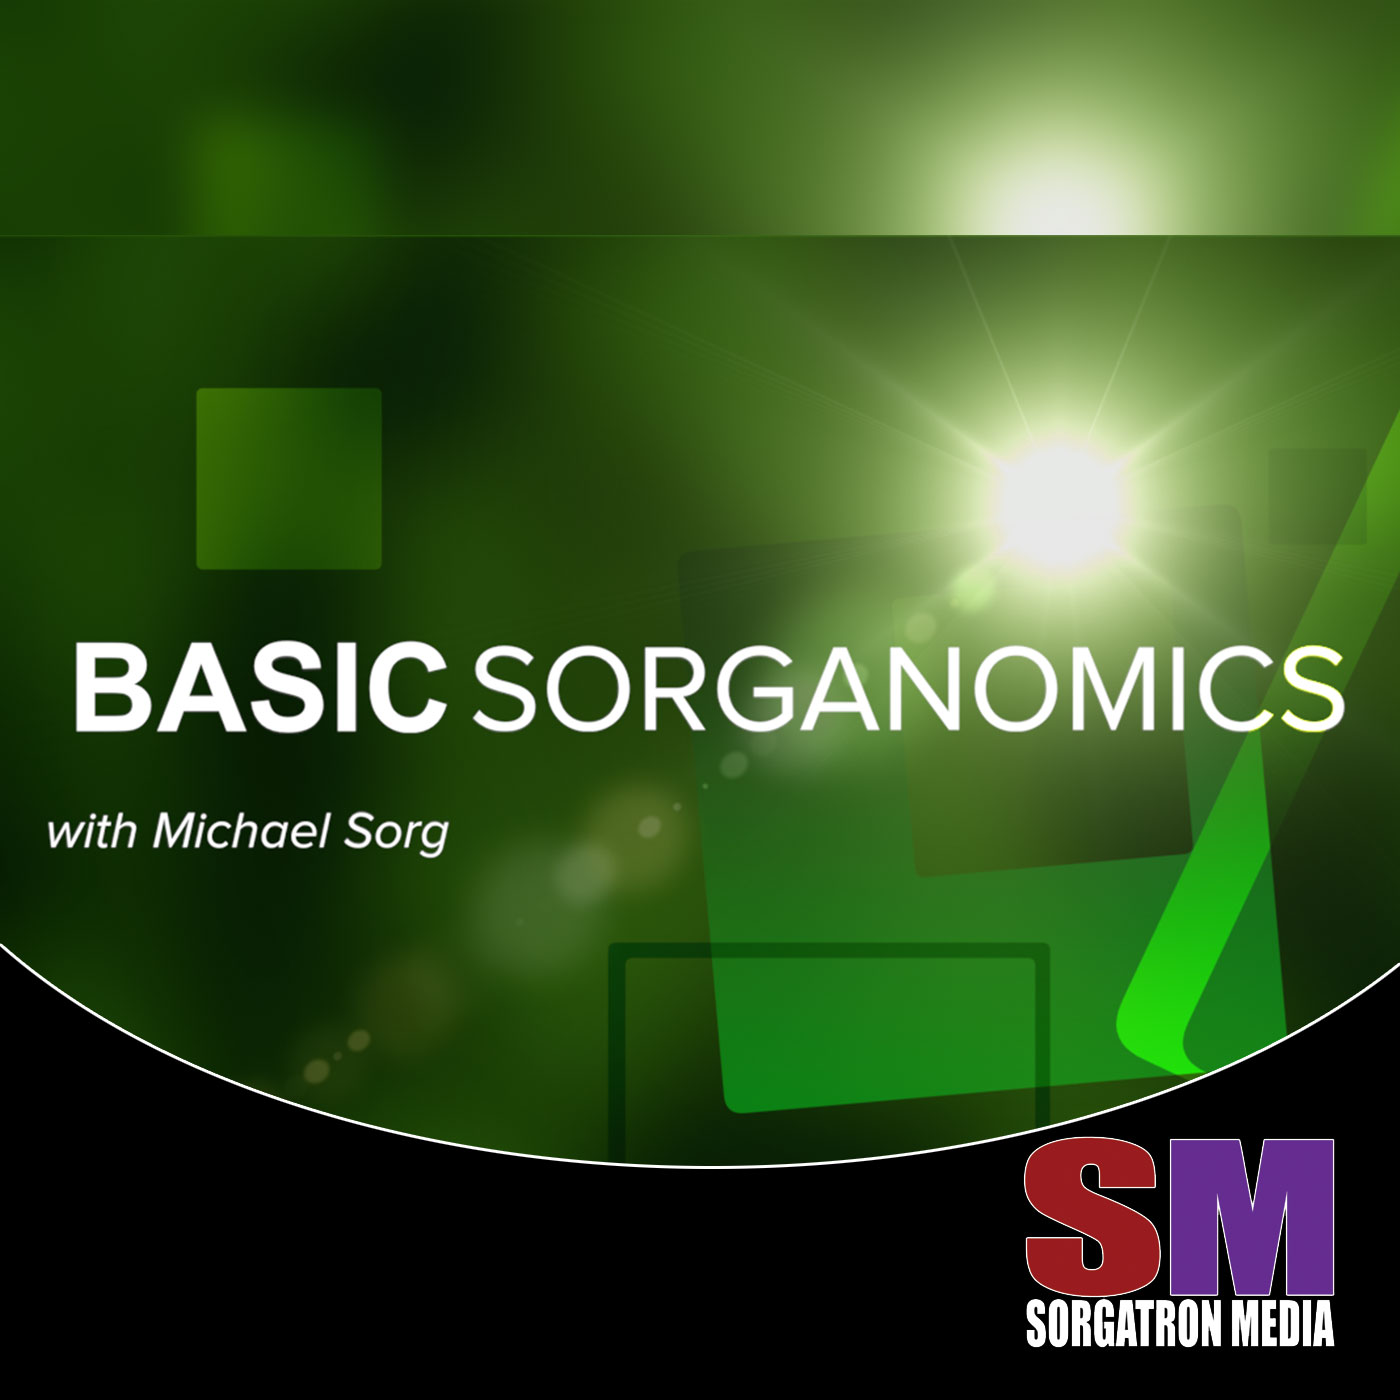 Basic Sorganomics: The Split